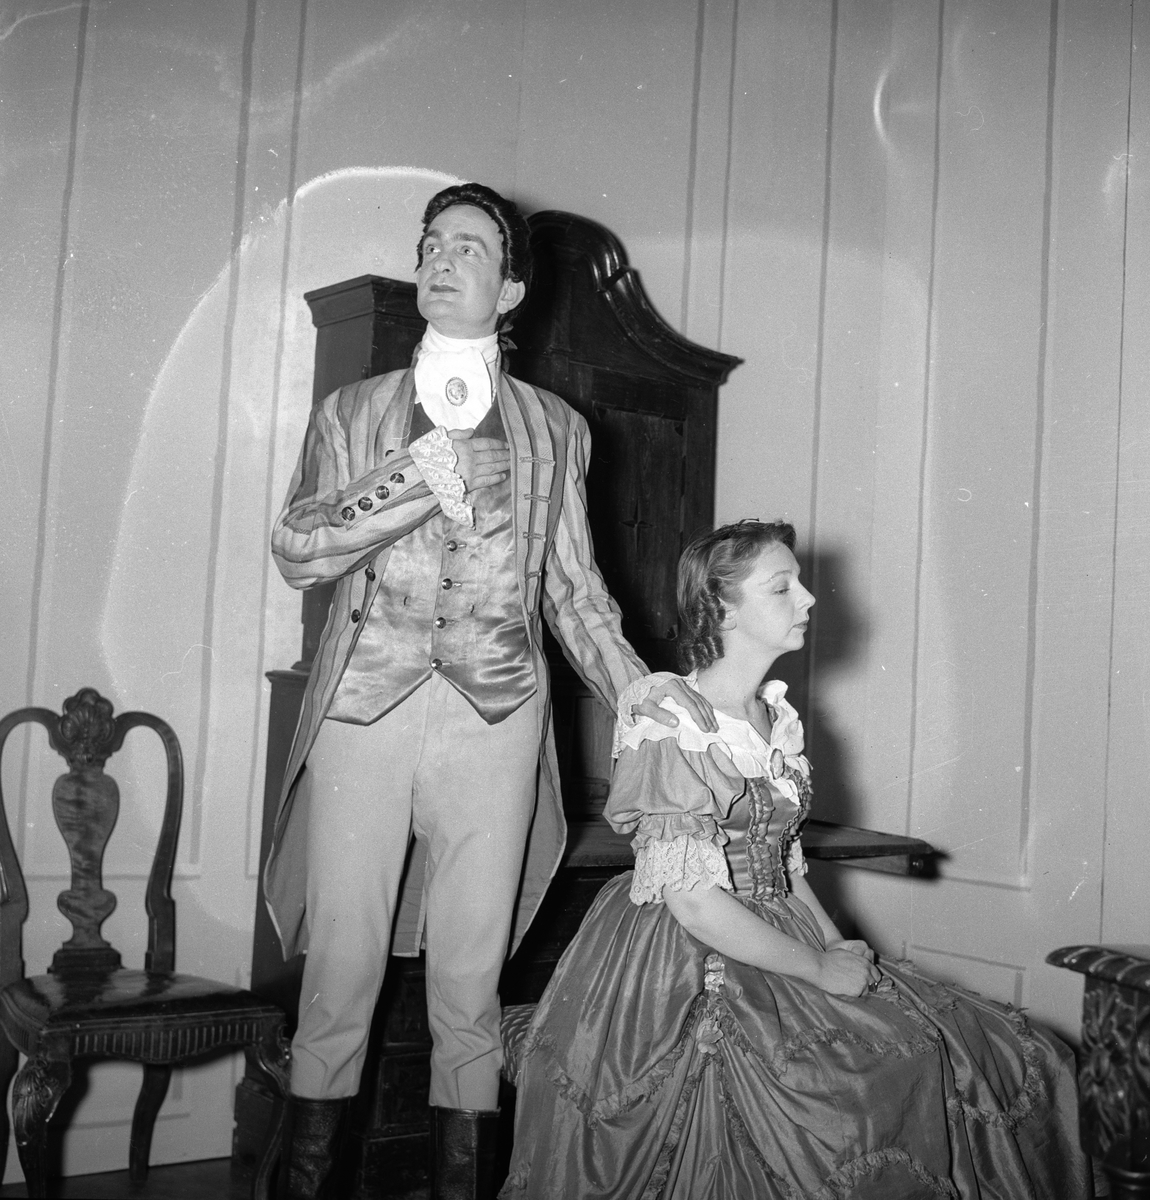 Oppsetning av "Berkeley Square". Skuespillere Edith Ellingsen og Tørres Aadland sammen på scenen. Fotografert 7. november 1955